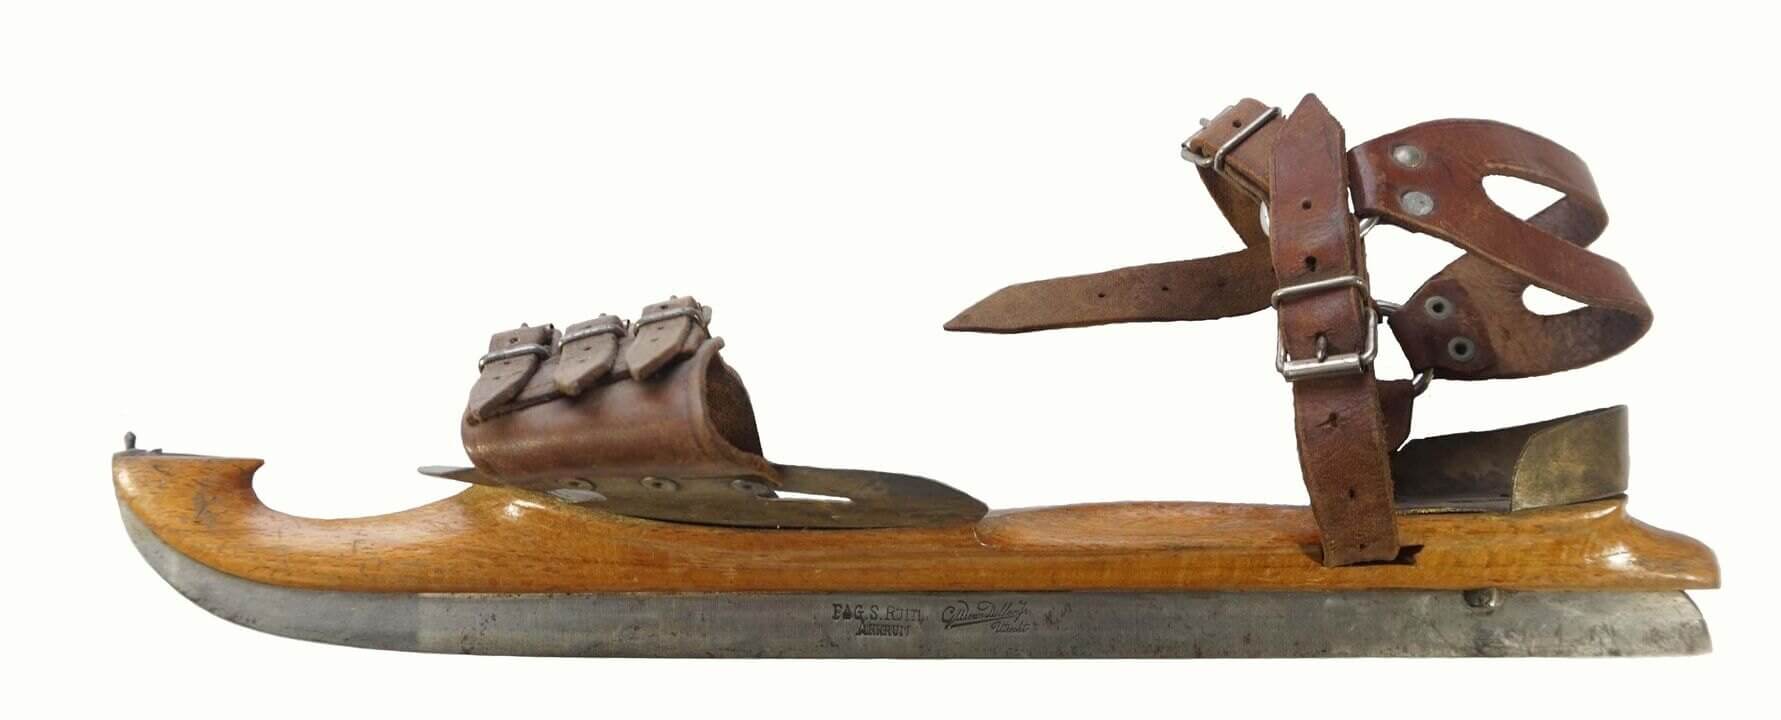 Een van de schaatsmodellen die in de winkel werden verkocht. Op het ijzer zie je de naam van de maker van het ijzer en van G.W. Van Dillen jr. De kans is groot dat het lederwerk afkomstig was van zijn broer uit de Schoutenstraat.